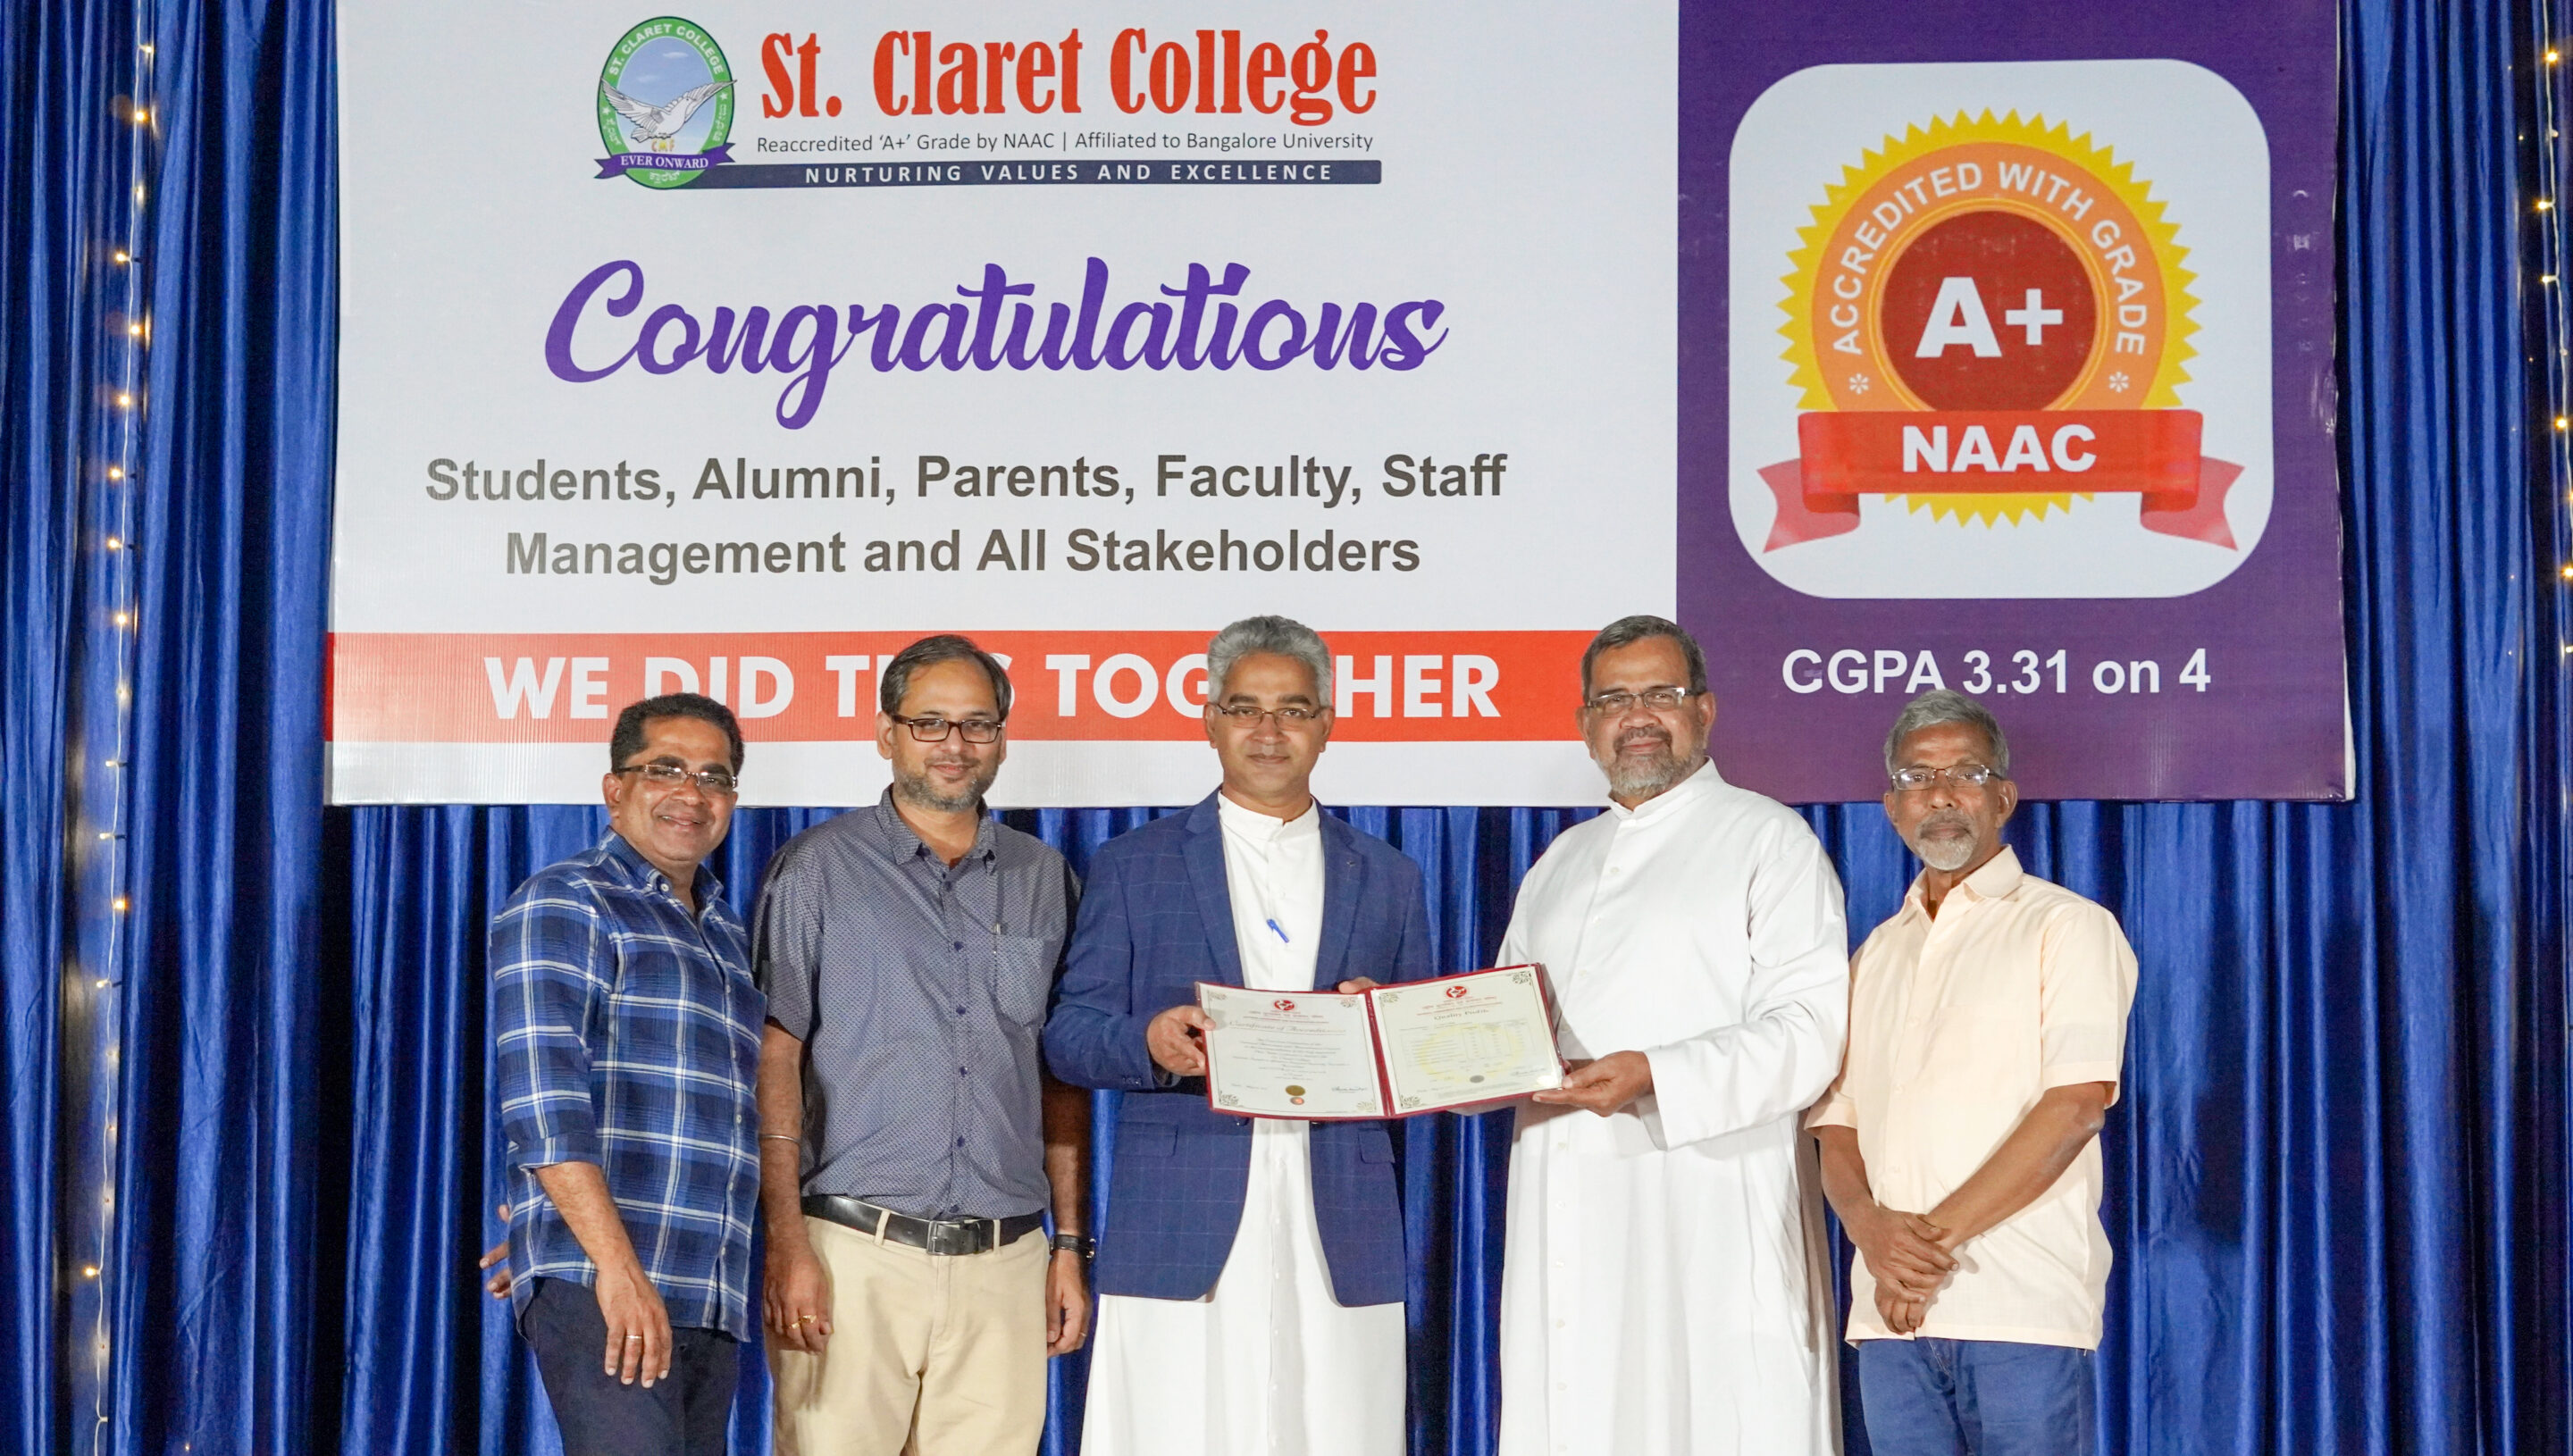 Il St. Claret College di Bangalore ha ottenuto il grado A+ da NAAC